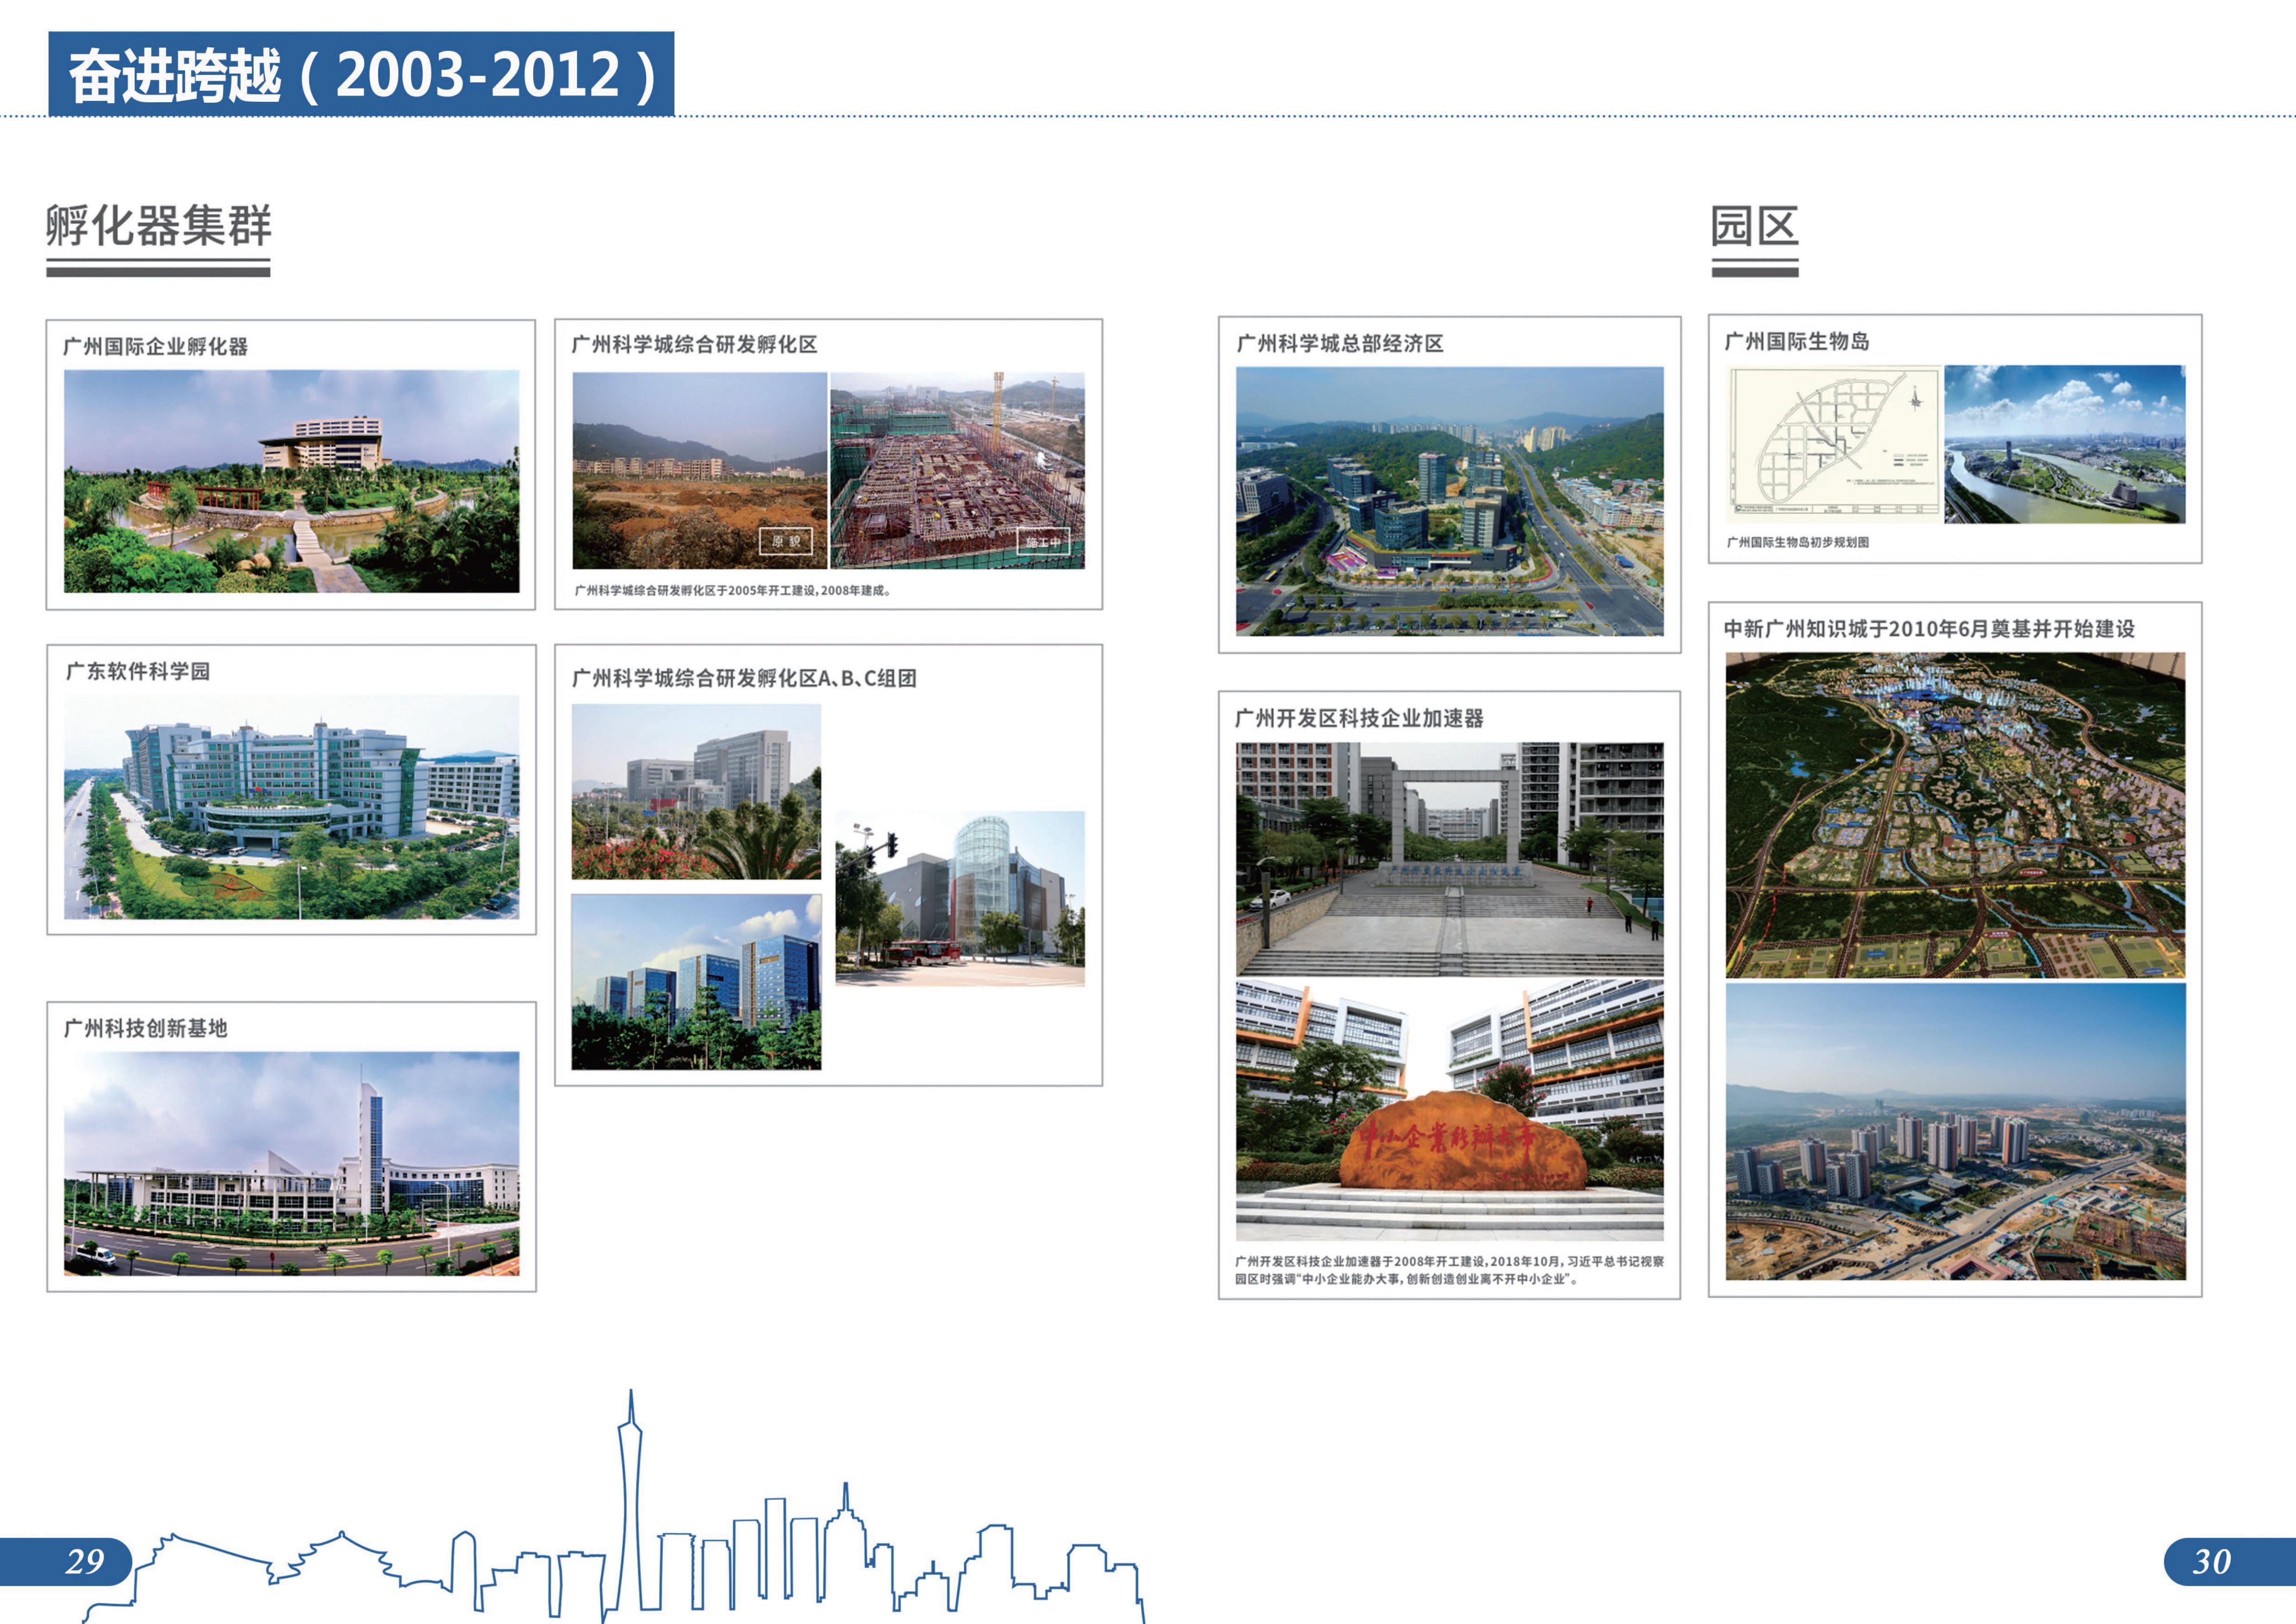 城市建设档案图片展图册成品20230807-17.jpg